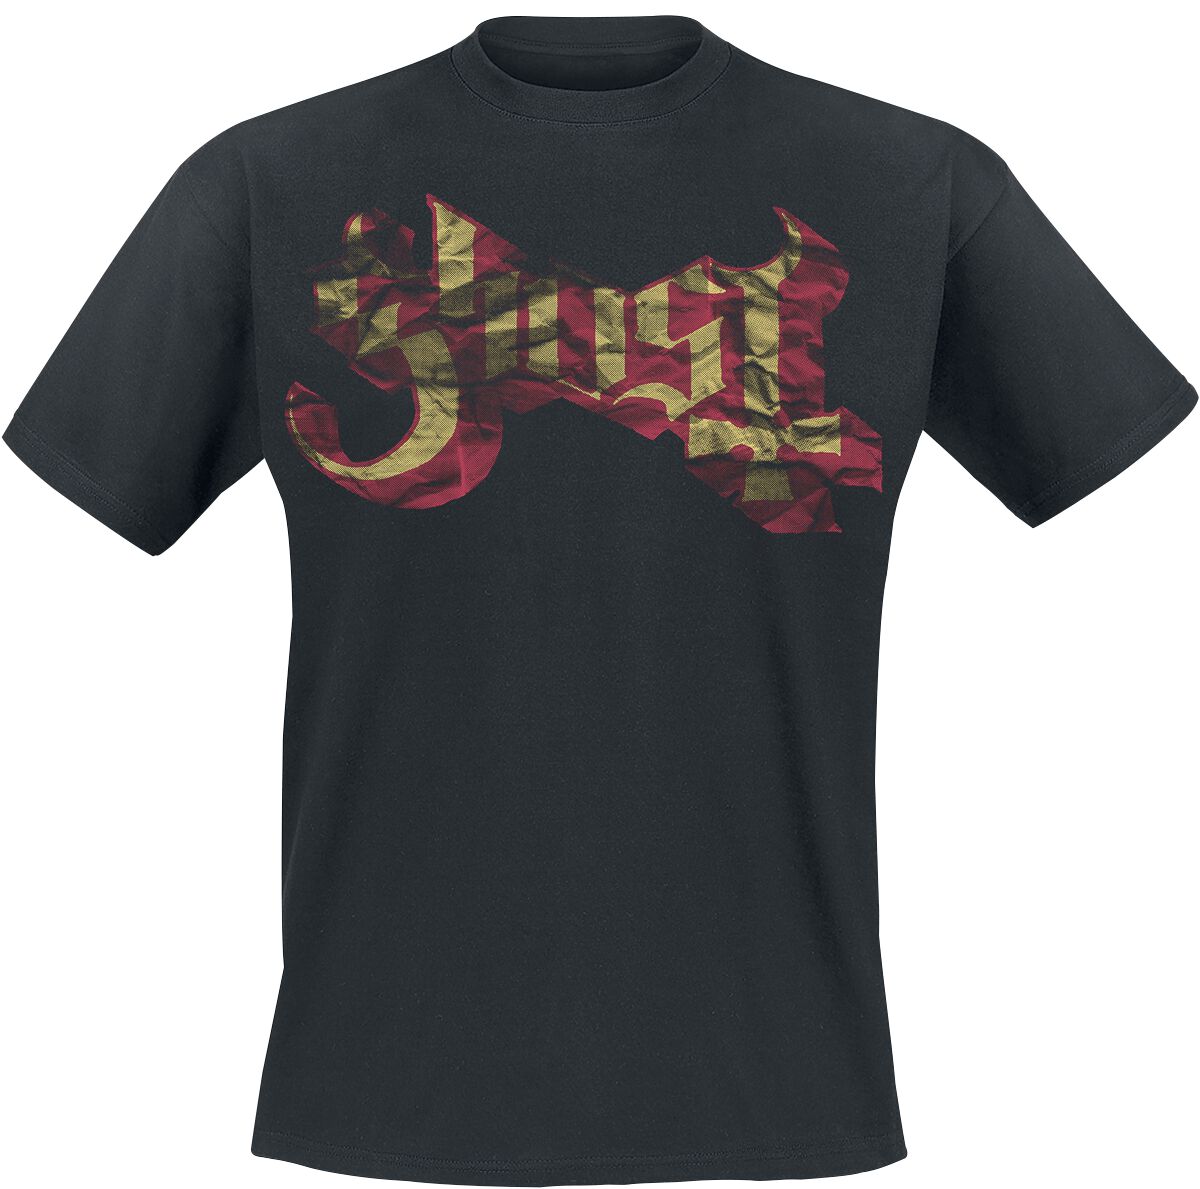 Ghost T-Shirt - Large Logo - S bis XXL - für Männer - Größe L - schwarz  - Lizenziertes Merchandise!